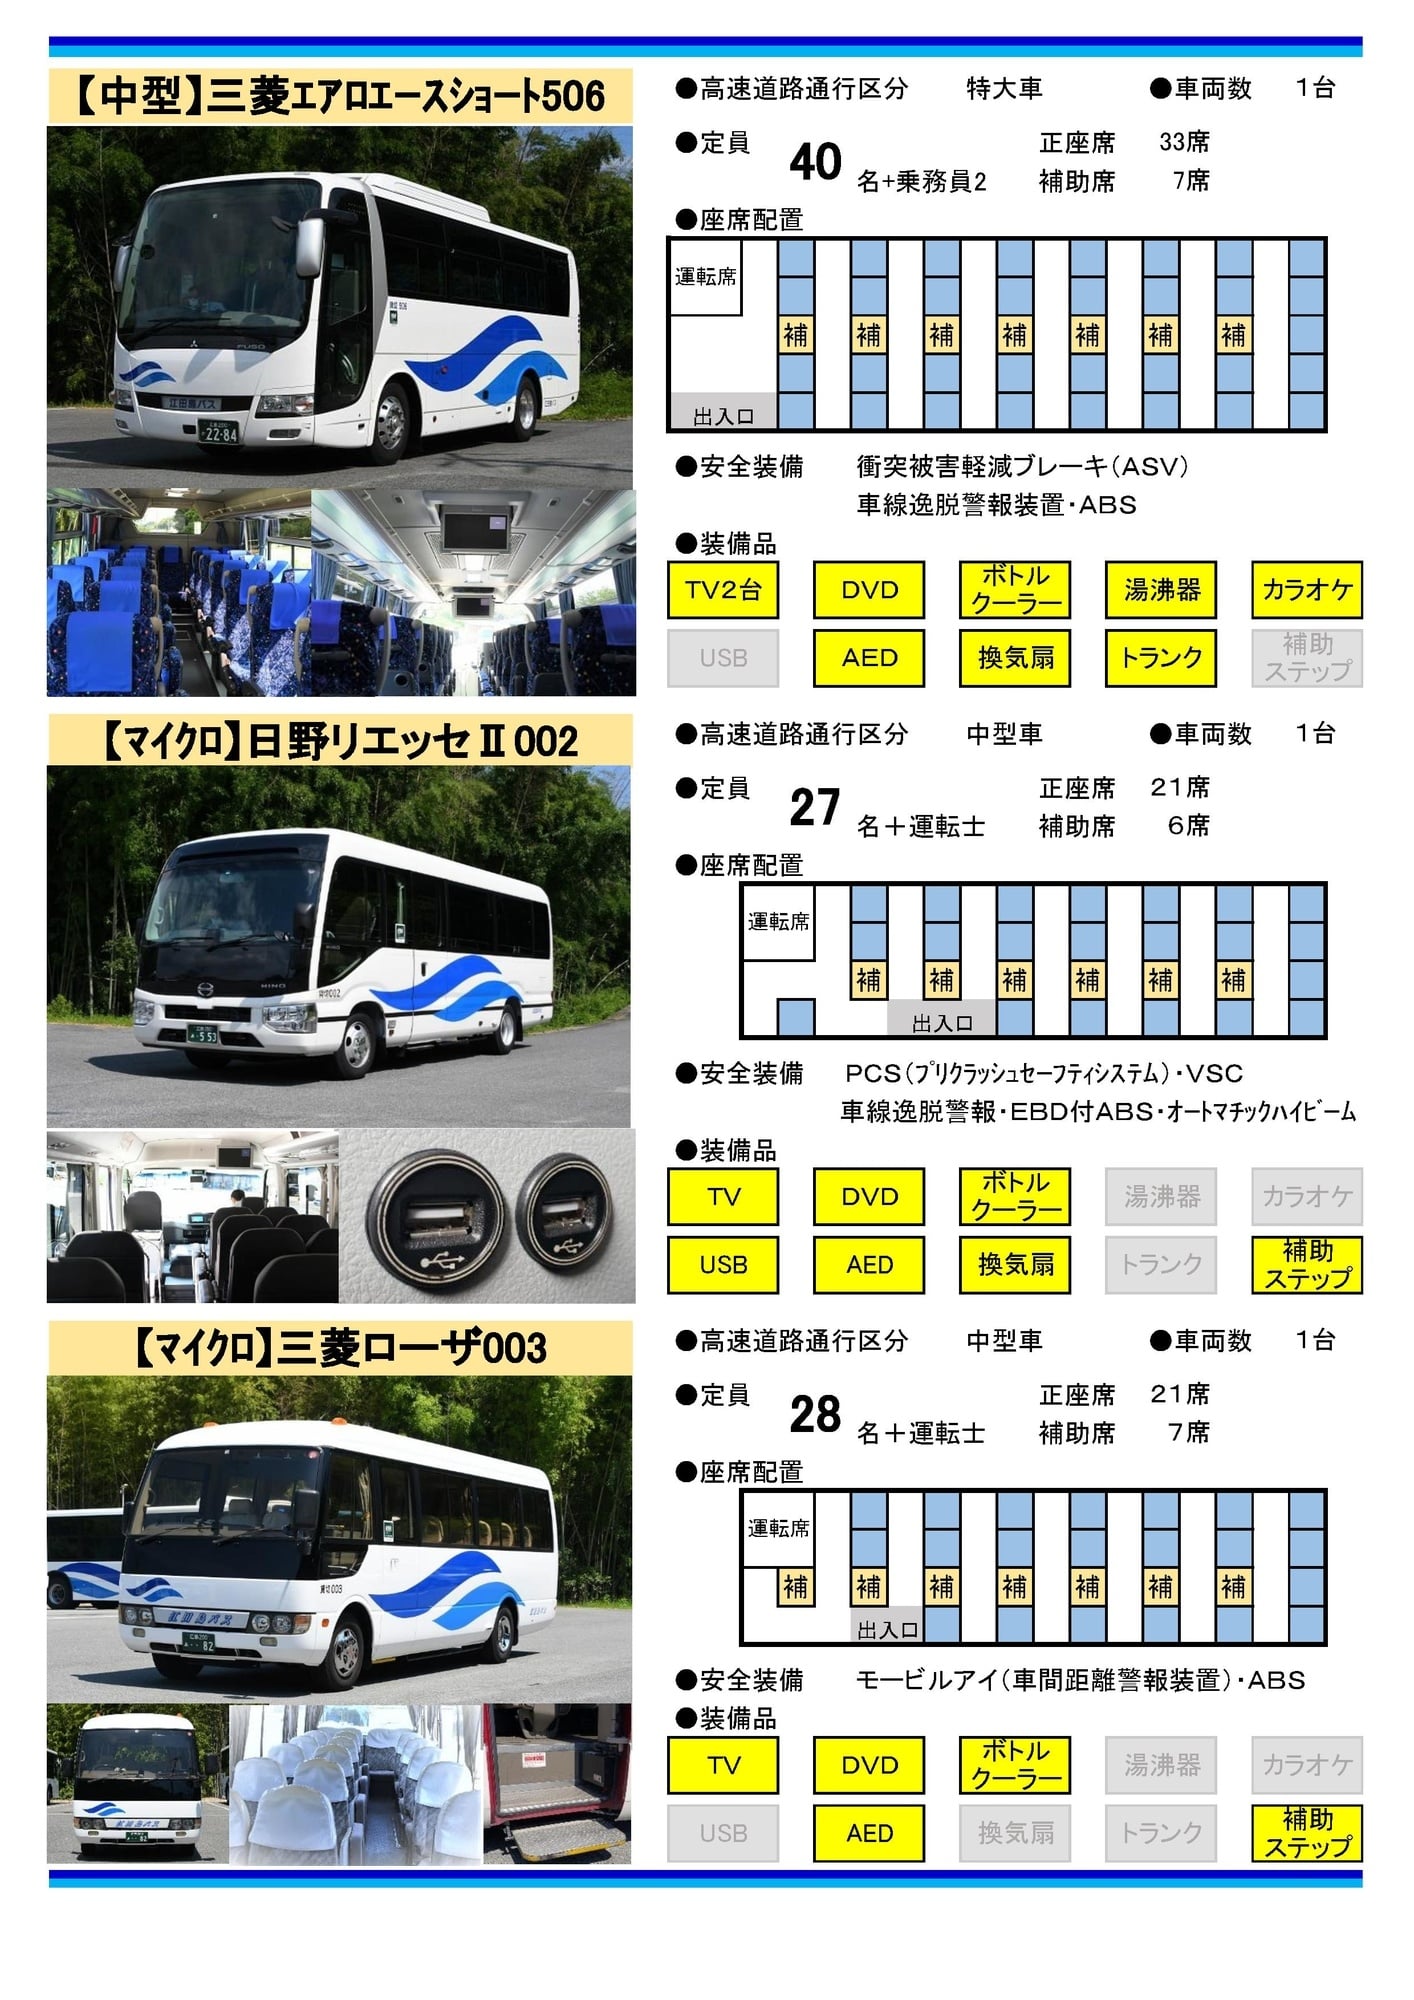 貸切バスについて 江田島バス株式会社 公式ホームページ